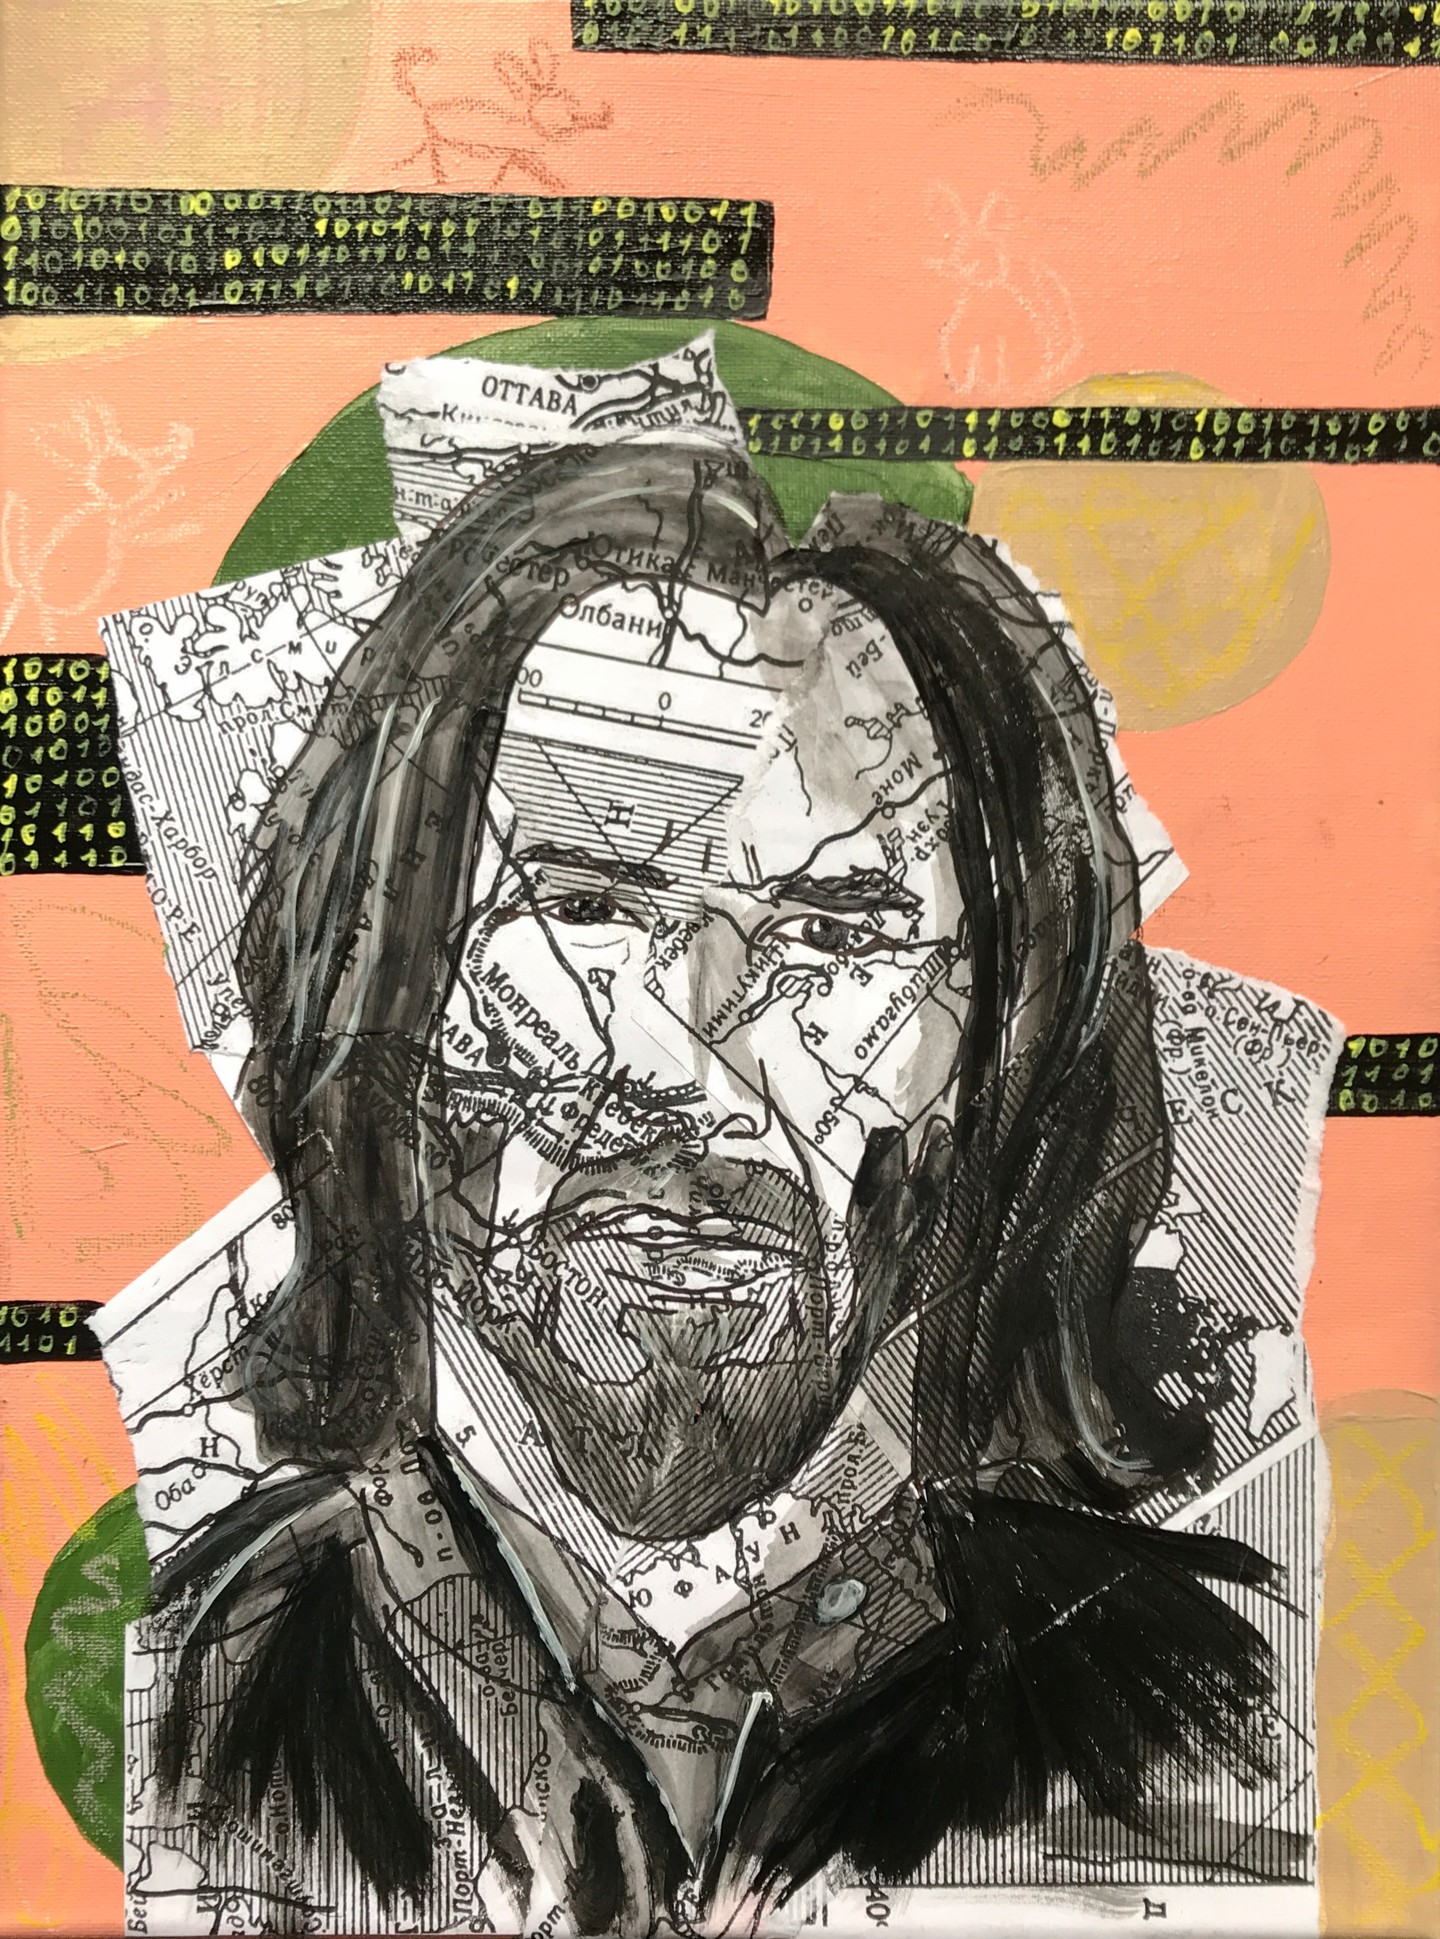 Keanu Reeves, Painting by Tatiana Sirius | Artmajeur